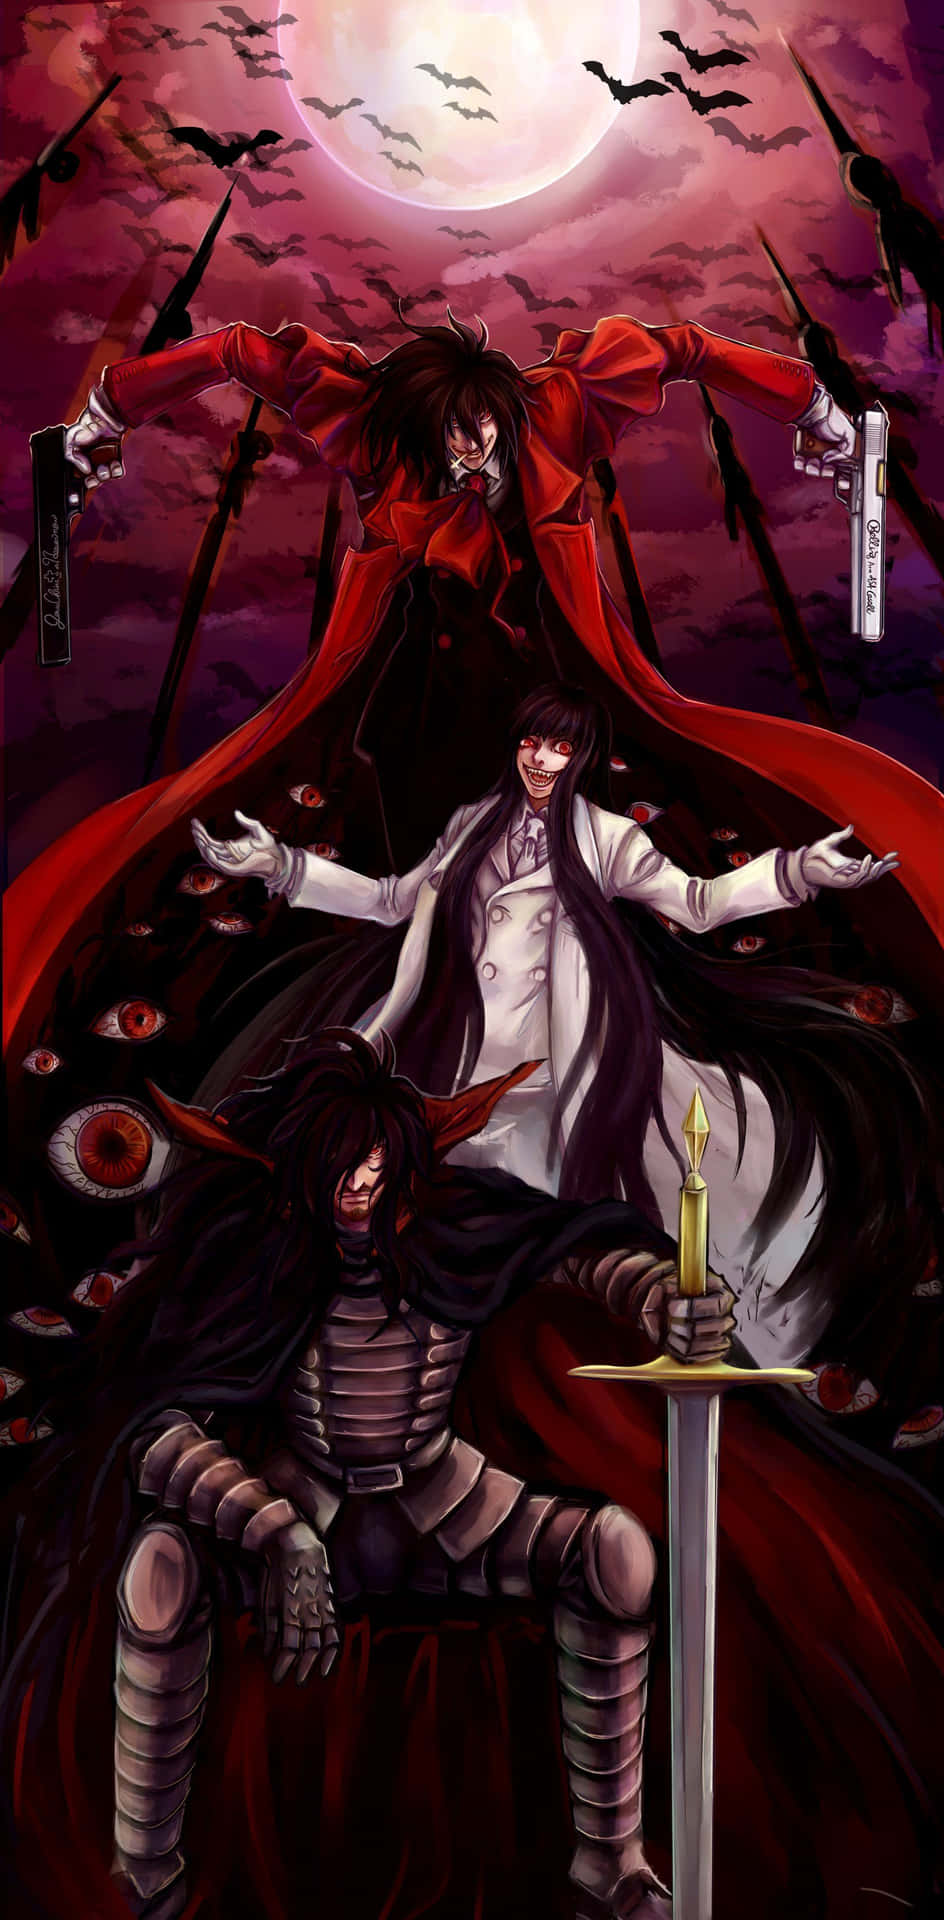 Wallpaper Anime, Hellsing, vampire, Alucard, crazy. for mobile and